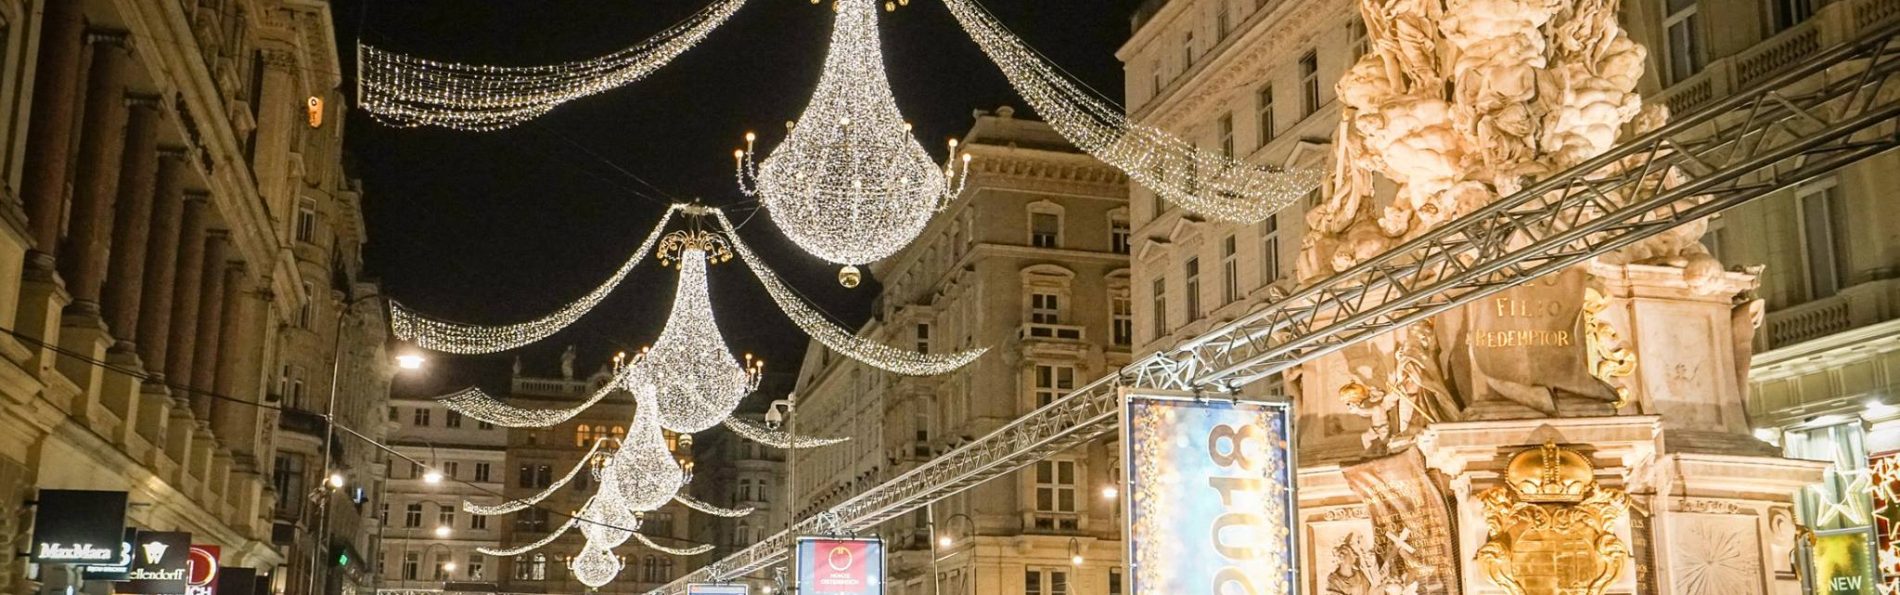 維也納新年活動 維也納跨年夜之路Ｗiener Silvesterpfad 活動資訊報報